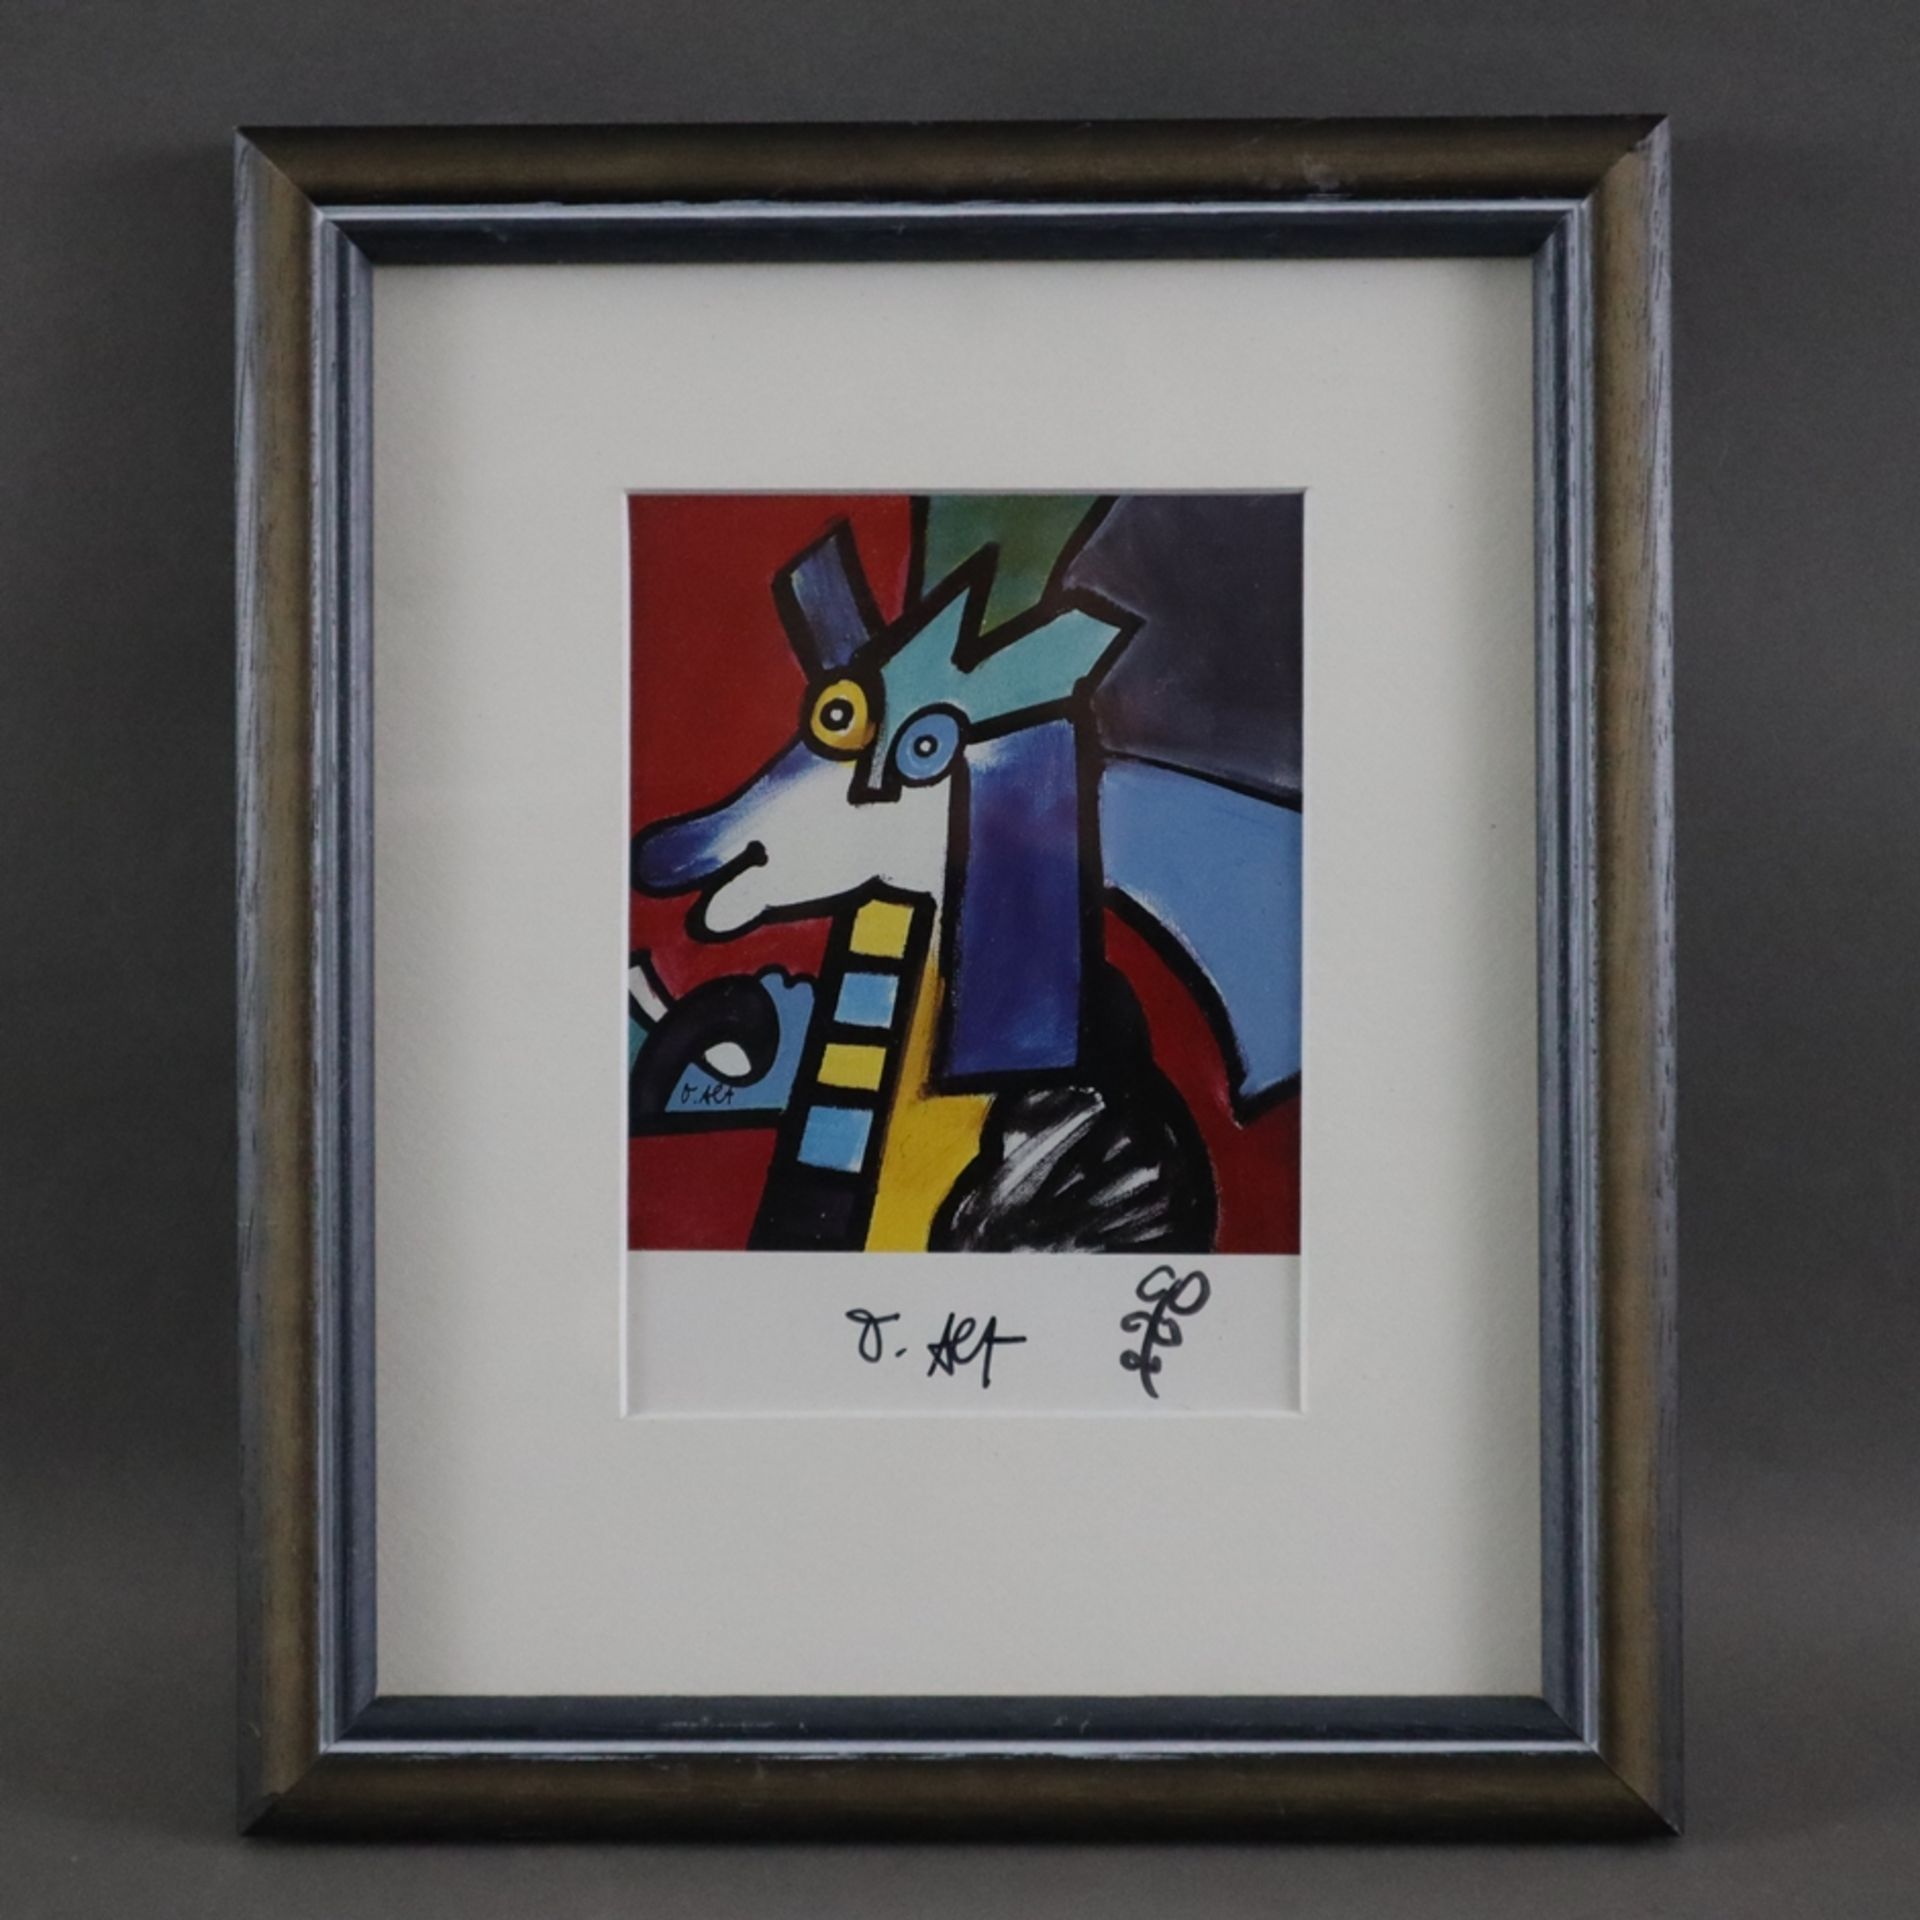 Alt, Otmar (*1940 in Wernigerode) - "Pferd" (1991), Kunstpostkarte, Multiple, Handsignatur mit klei - Bild 2 aus 4